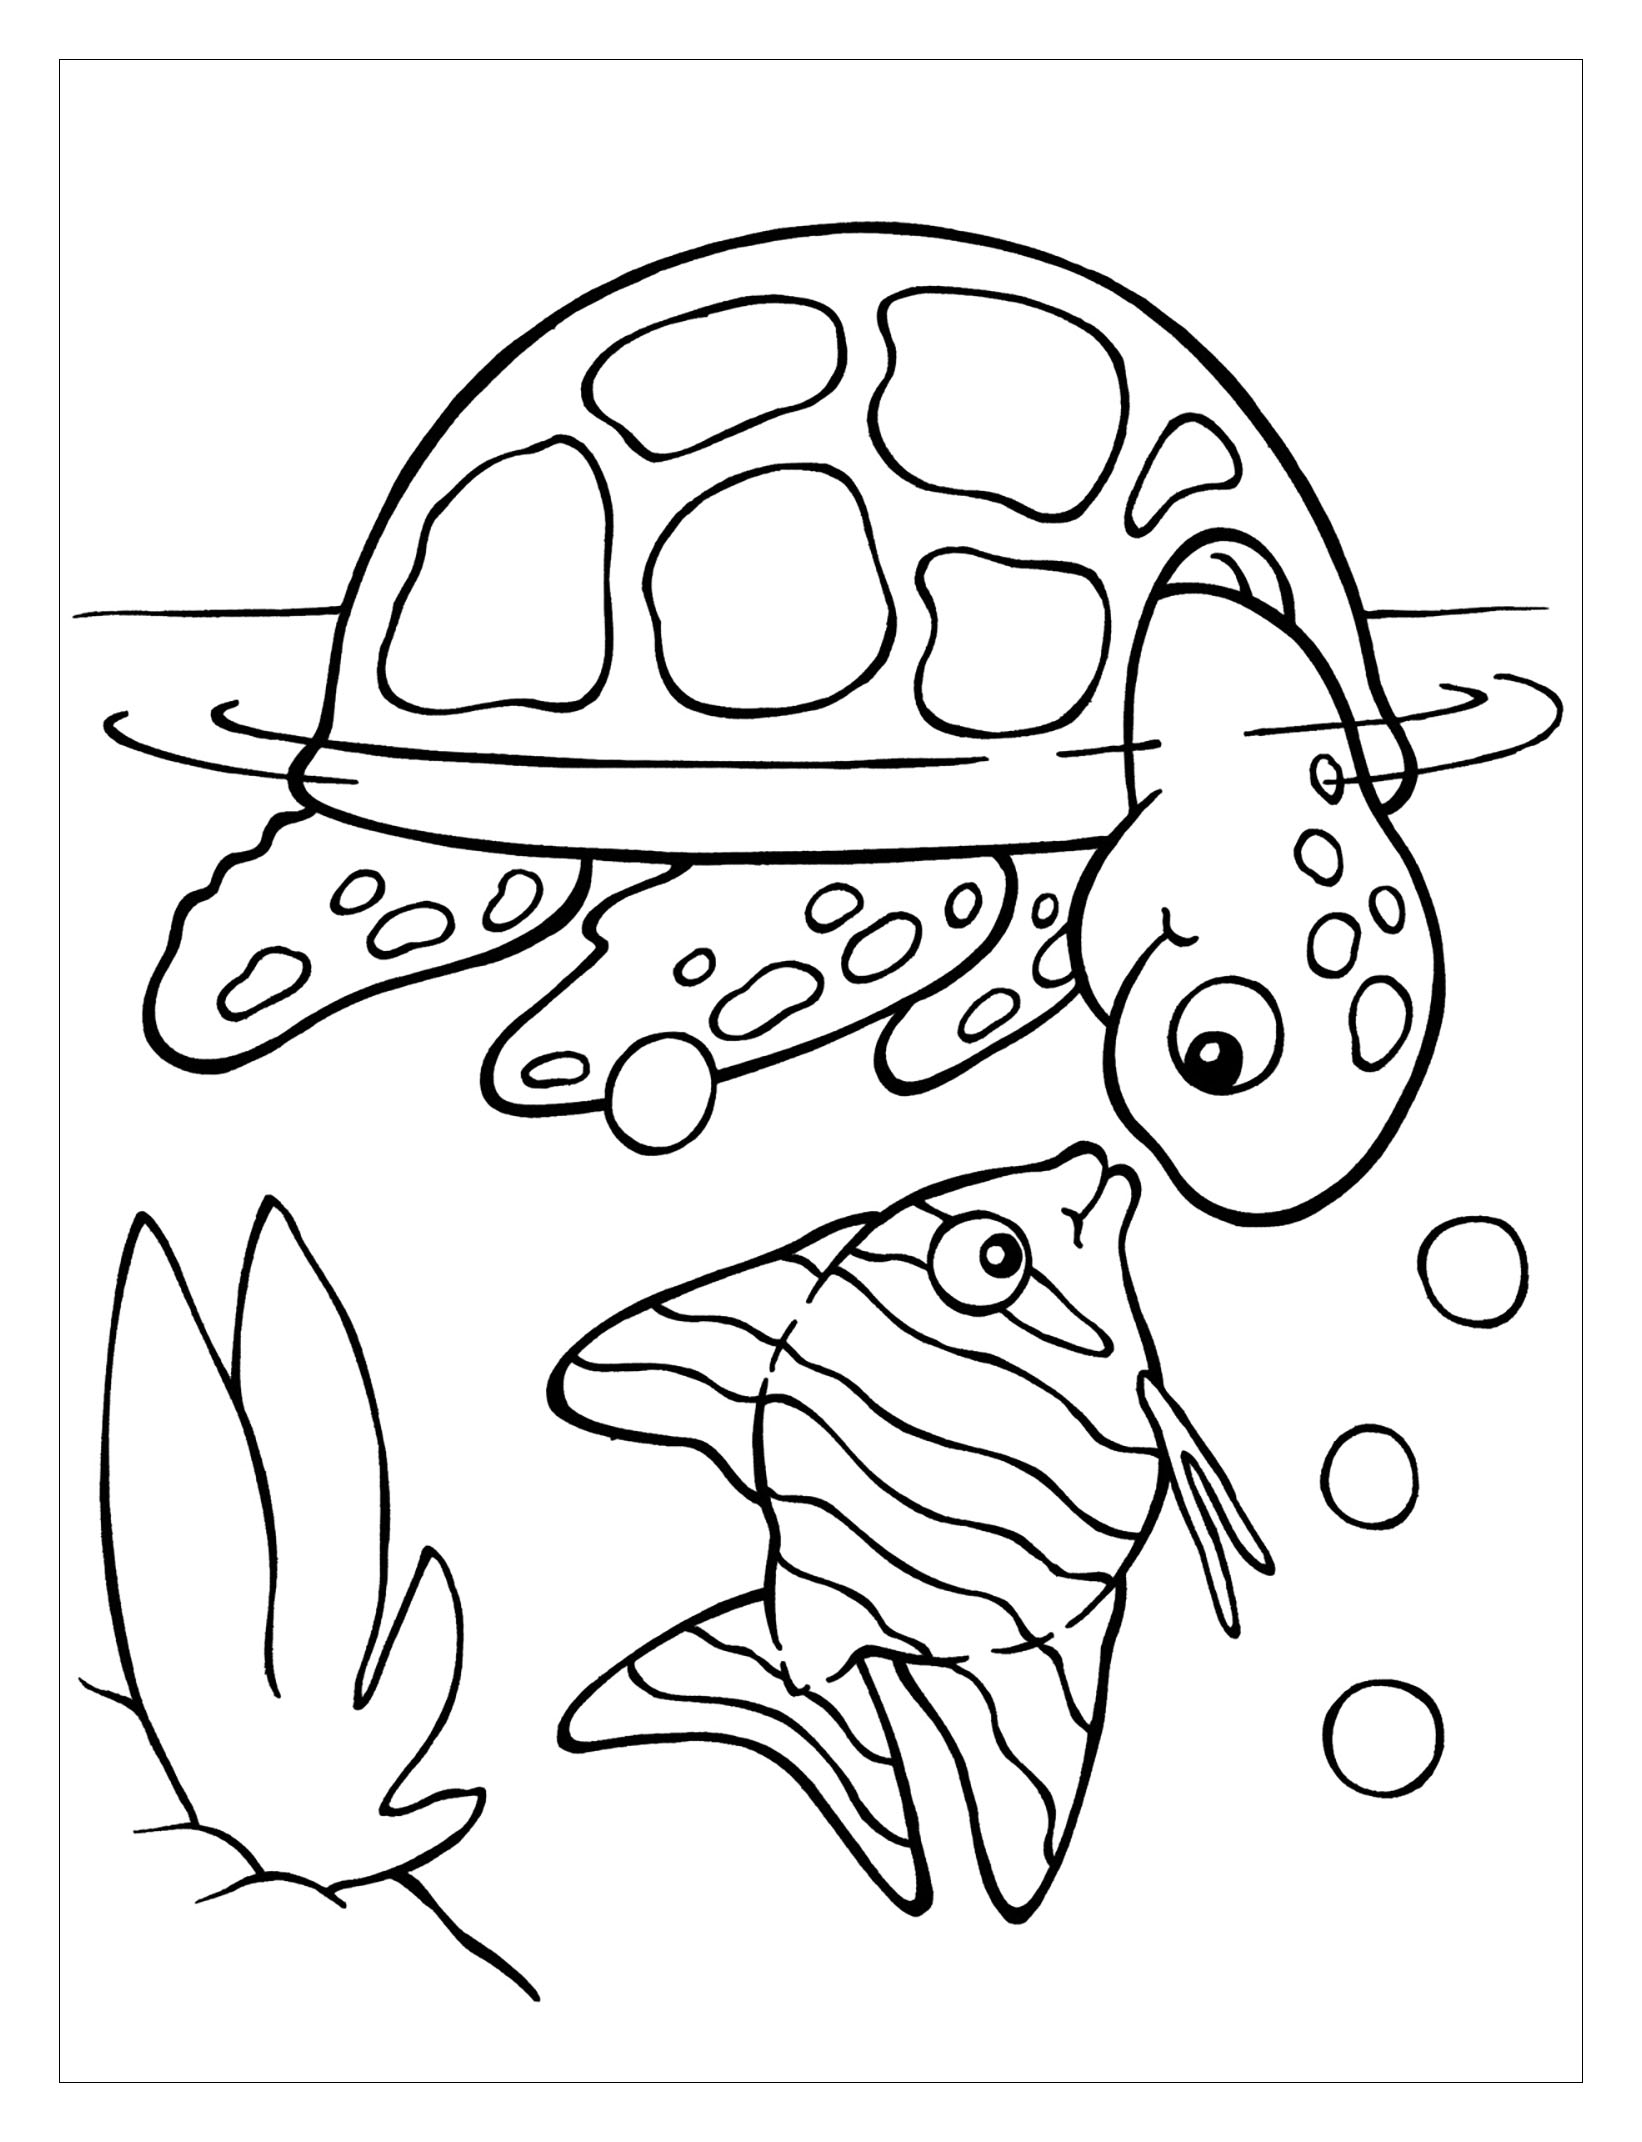 Imagem de tartaruga para imprimir e colorir